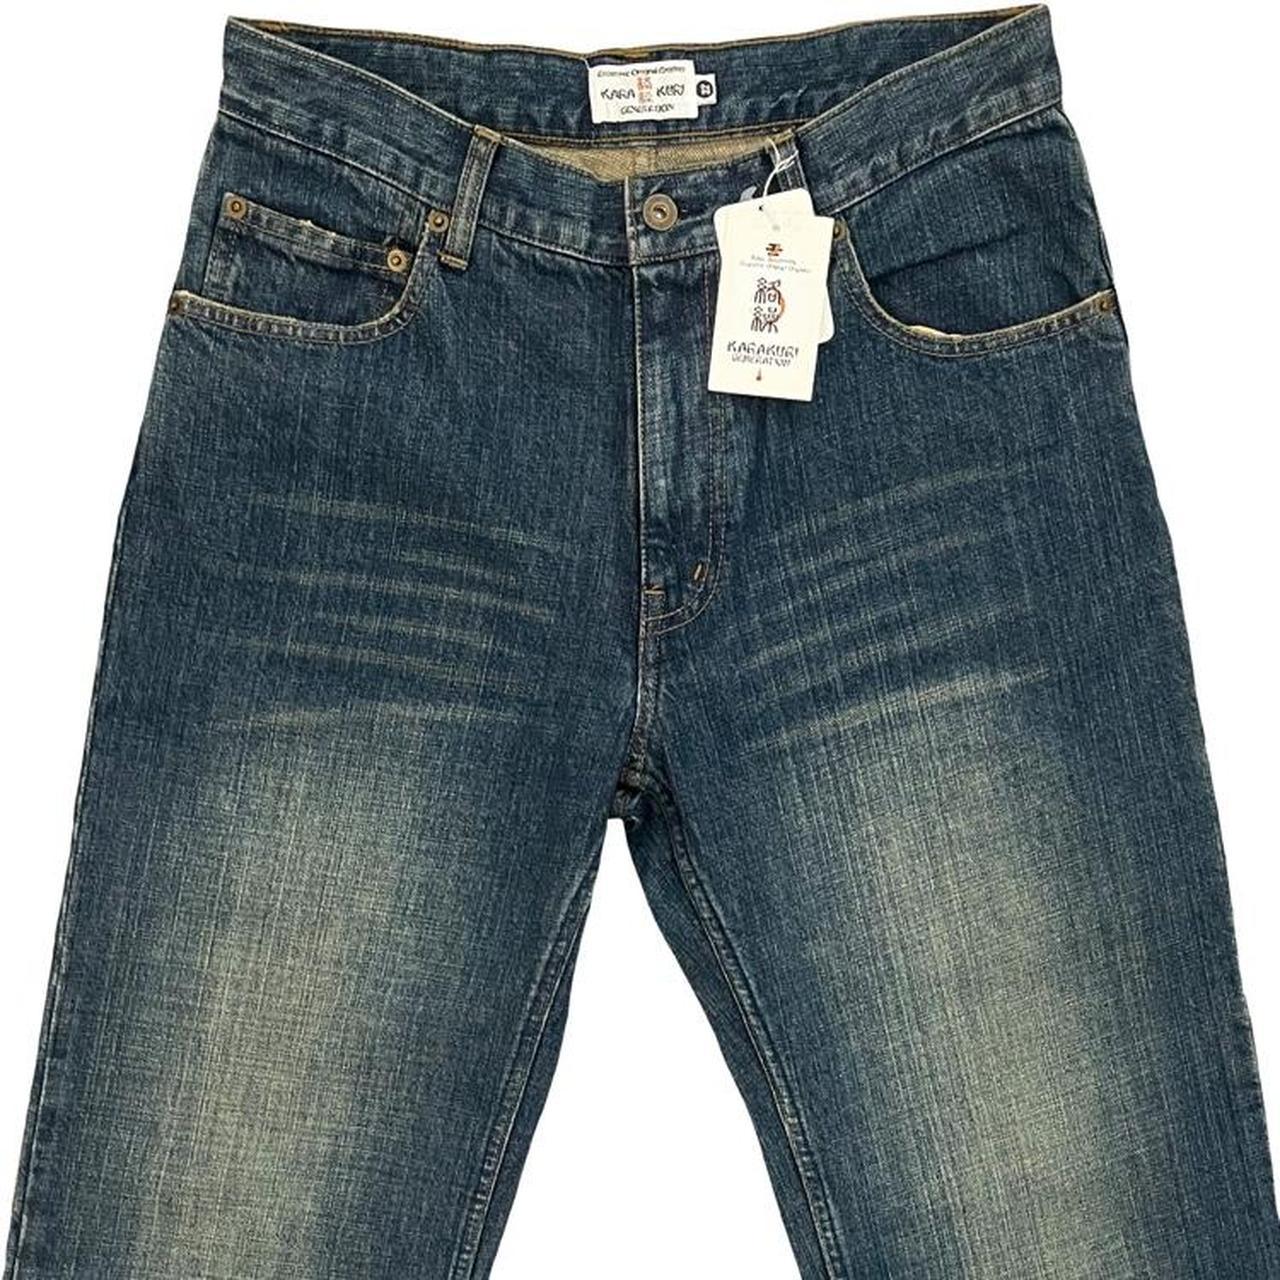 Karakuri Tamashii Multipocket Jeans - Known Source